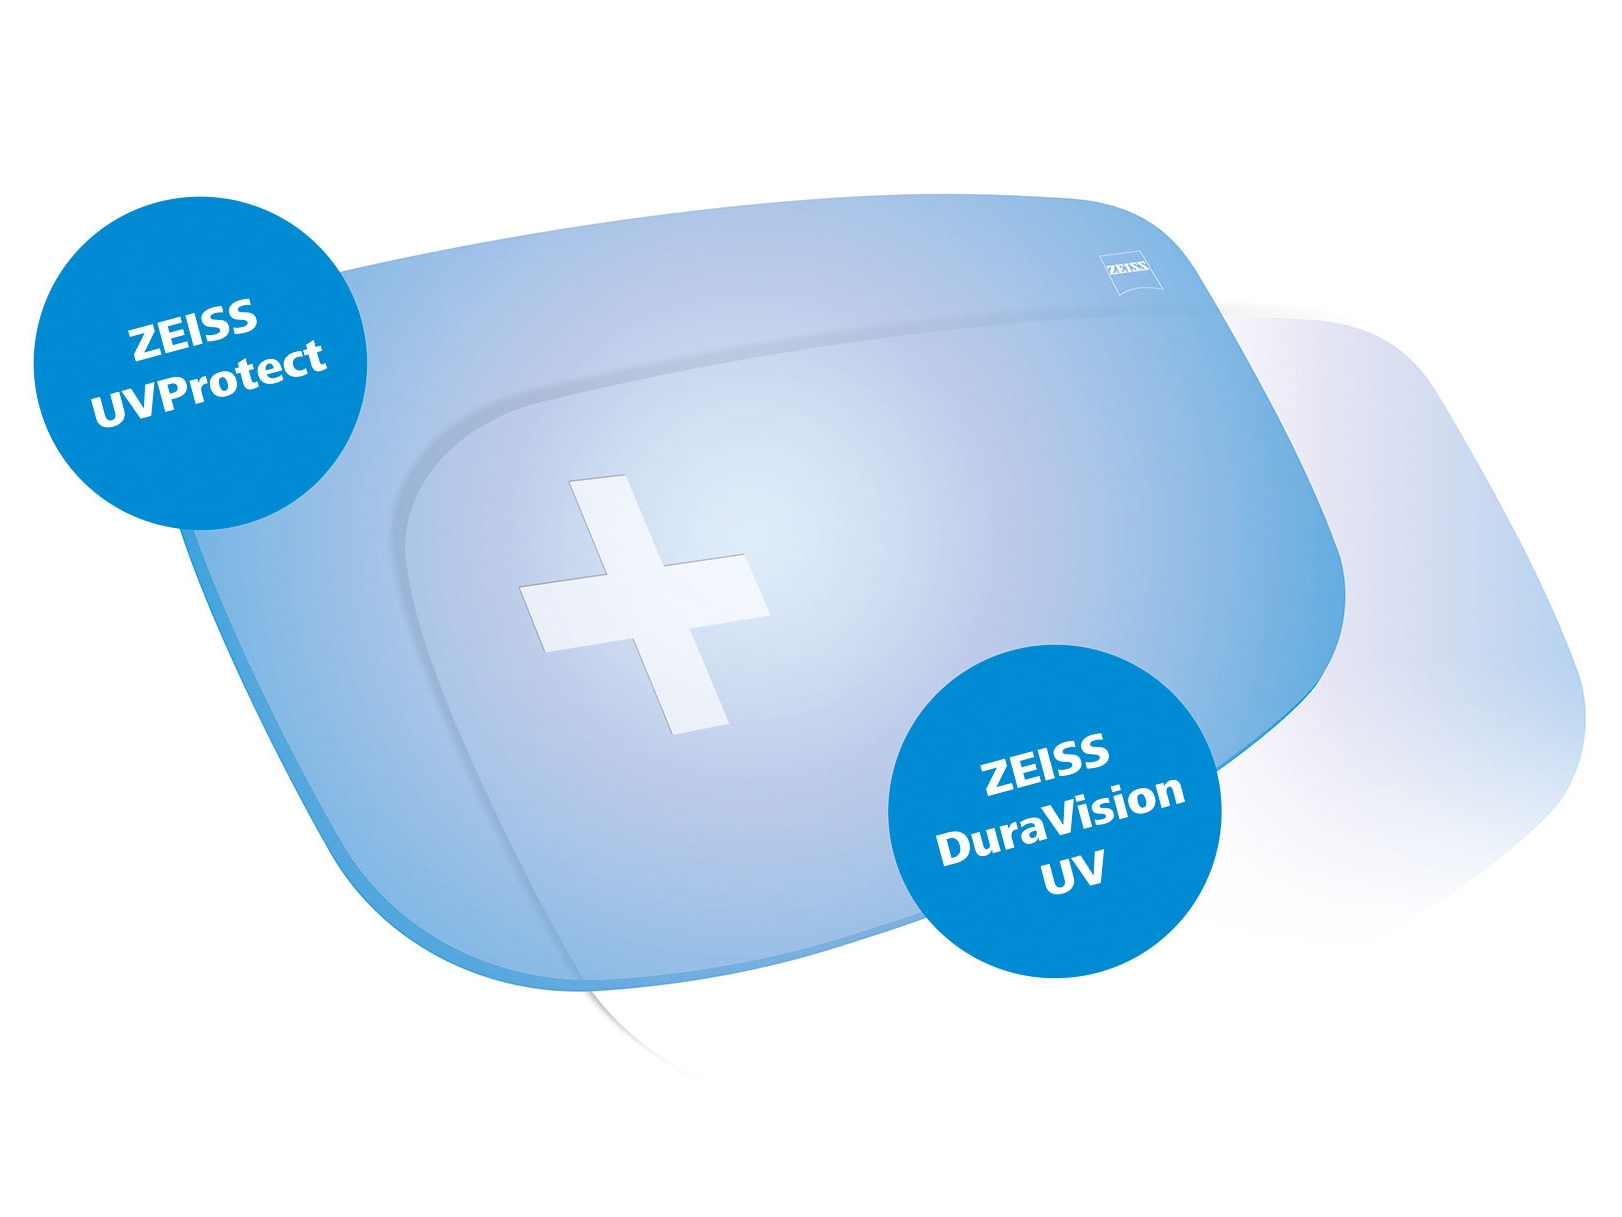 Alle Brillengläser von ZEISS verfügen jetzt standardmäßig über beidseitigen UV-Schutz. Die Grafik zeigt zwei Brillenglaslösungen.